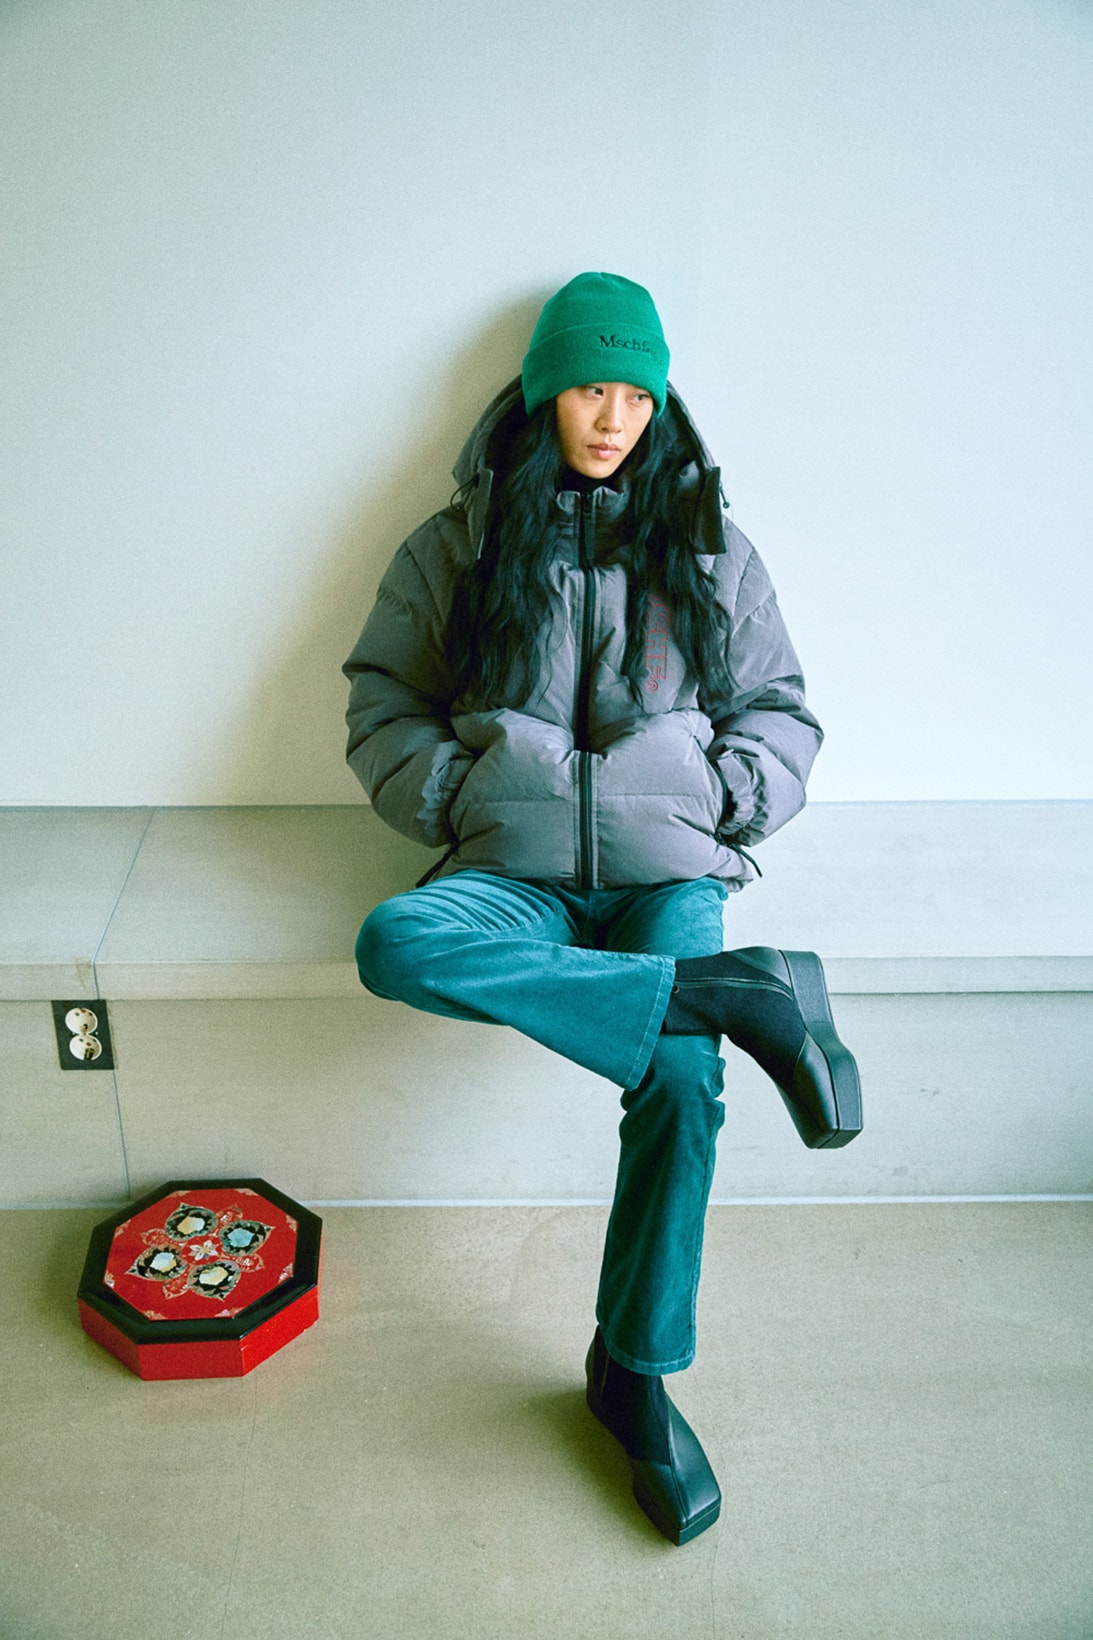 mschf fall winter lookbook streetwear seoul korea fashion bucket hat sweaters pants jackets bags 